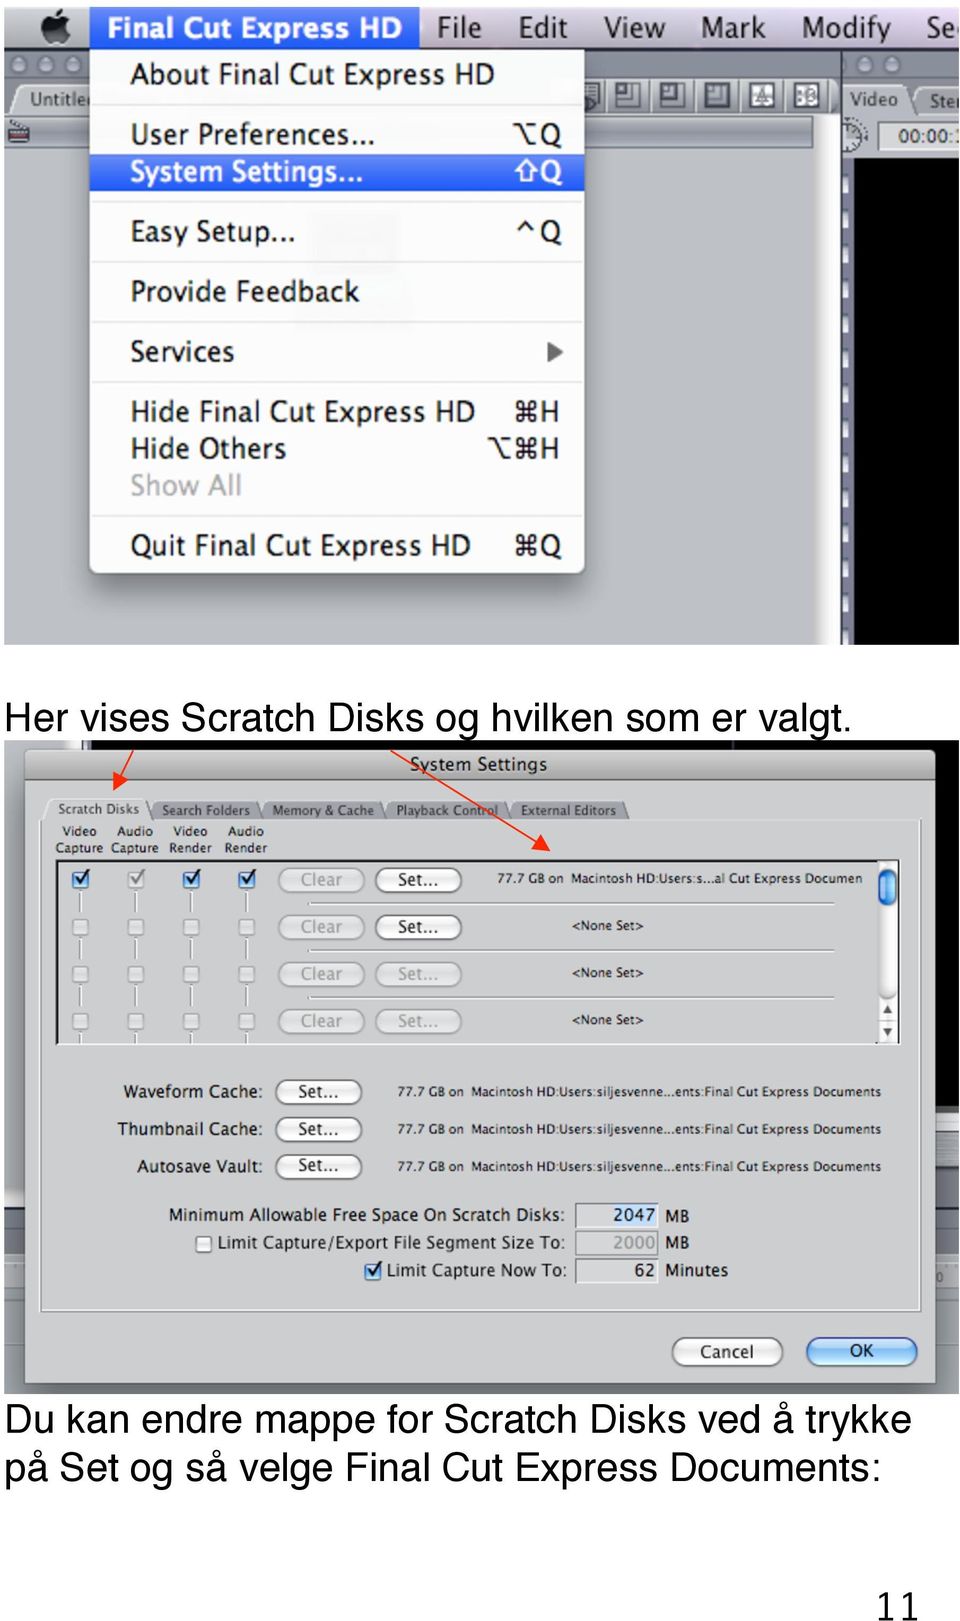 Du kan endre mappe for Scratch Disks